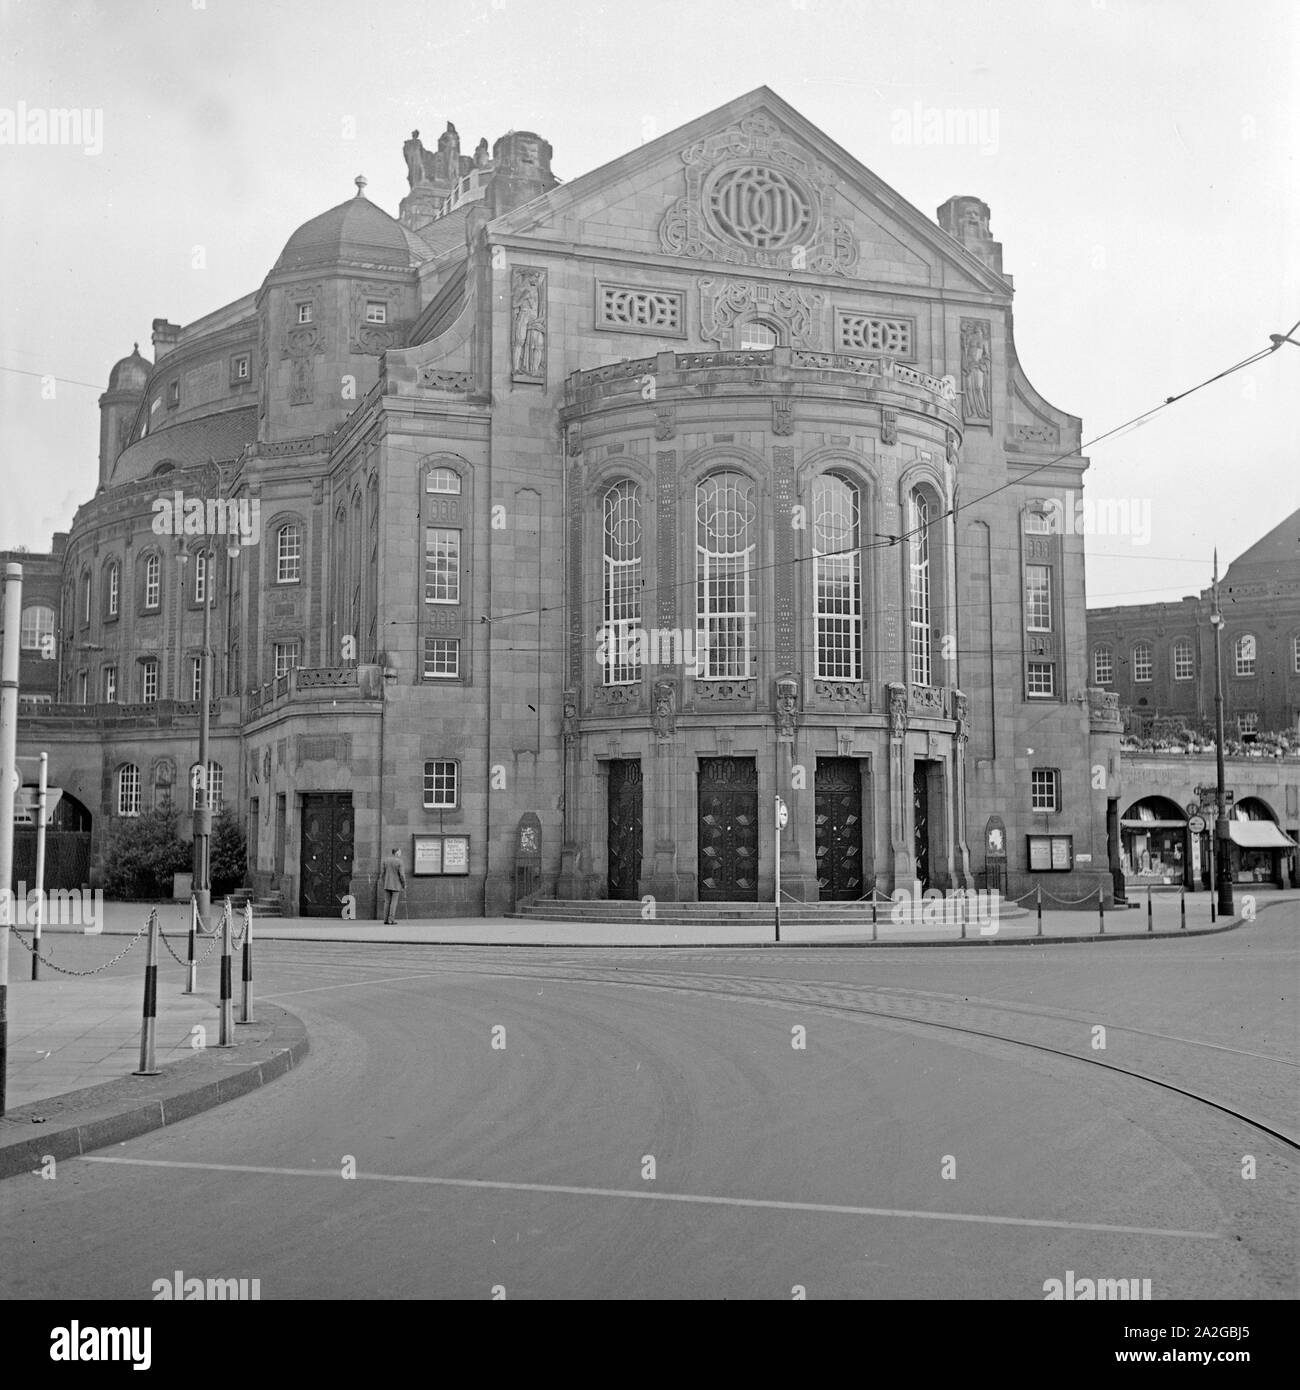 Das Opernhaus und Theater di Wuppertal Barmen, Deutschland 1930er Jahre. Opera e Teatro a Wuppertal Barmen, Germania 1930s. Foto Stock